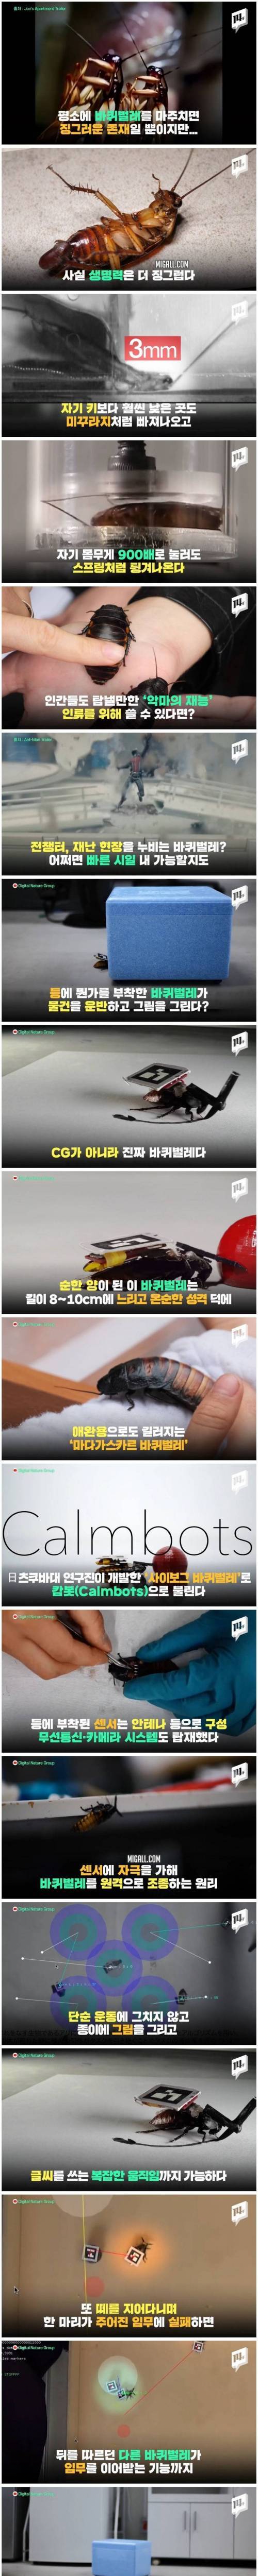 [스압] 과학자들이 탐내는 바퀴벌레의 재능.jpg